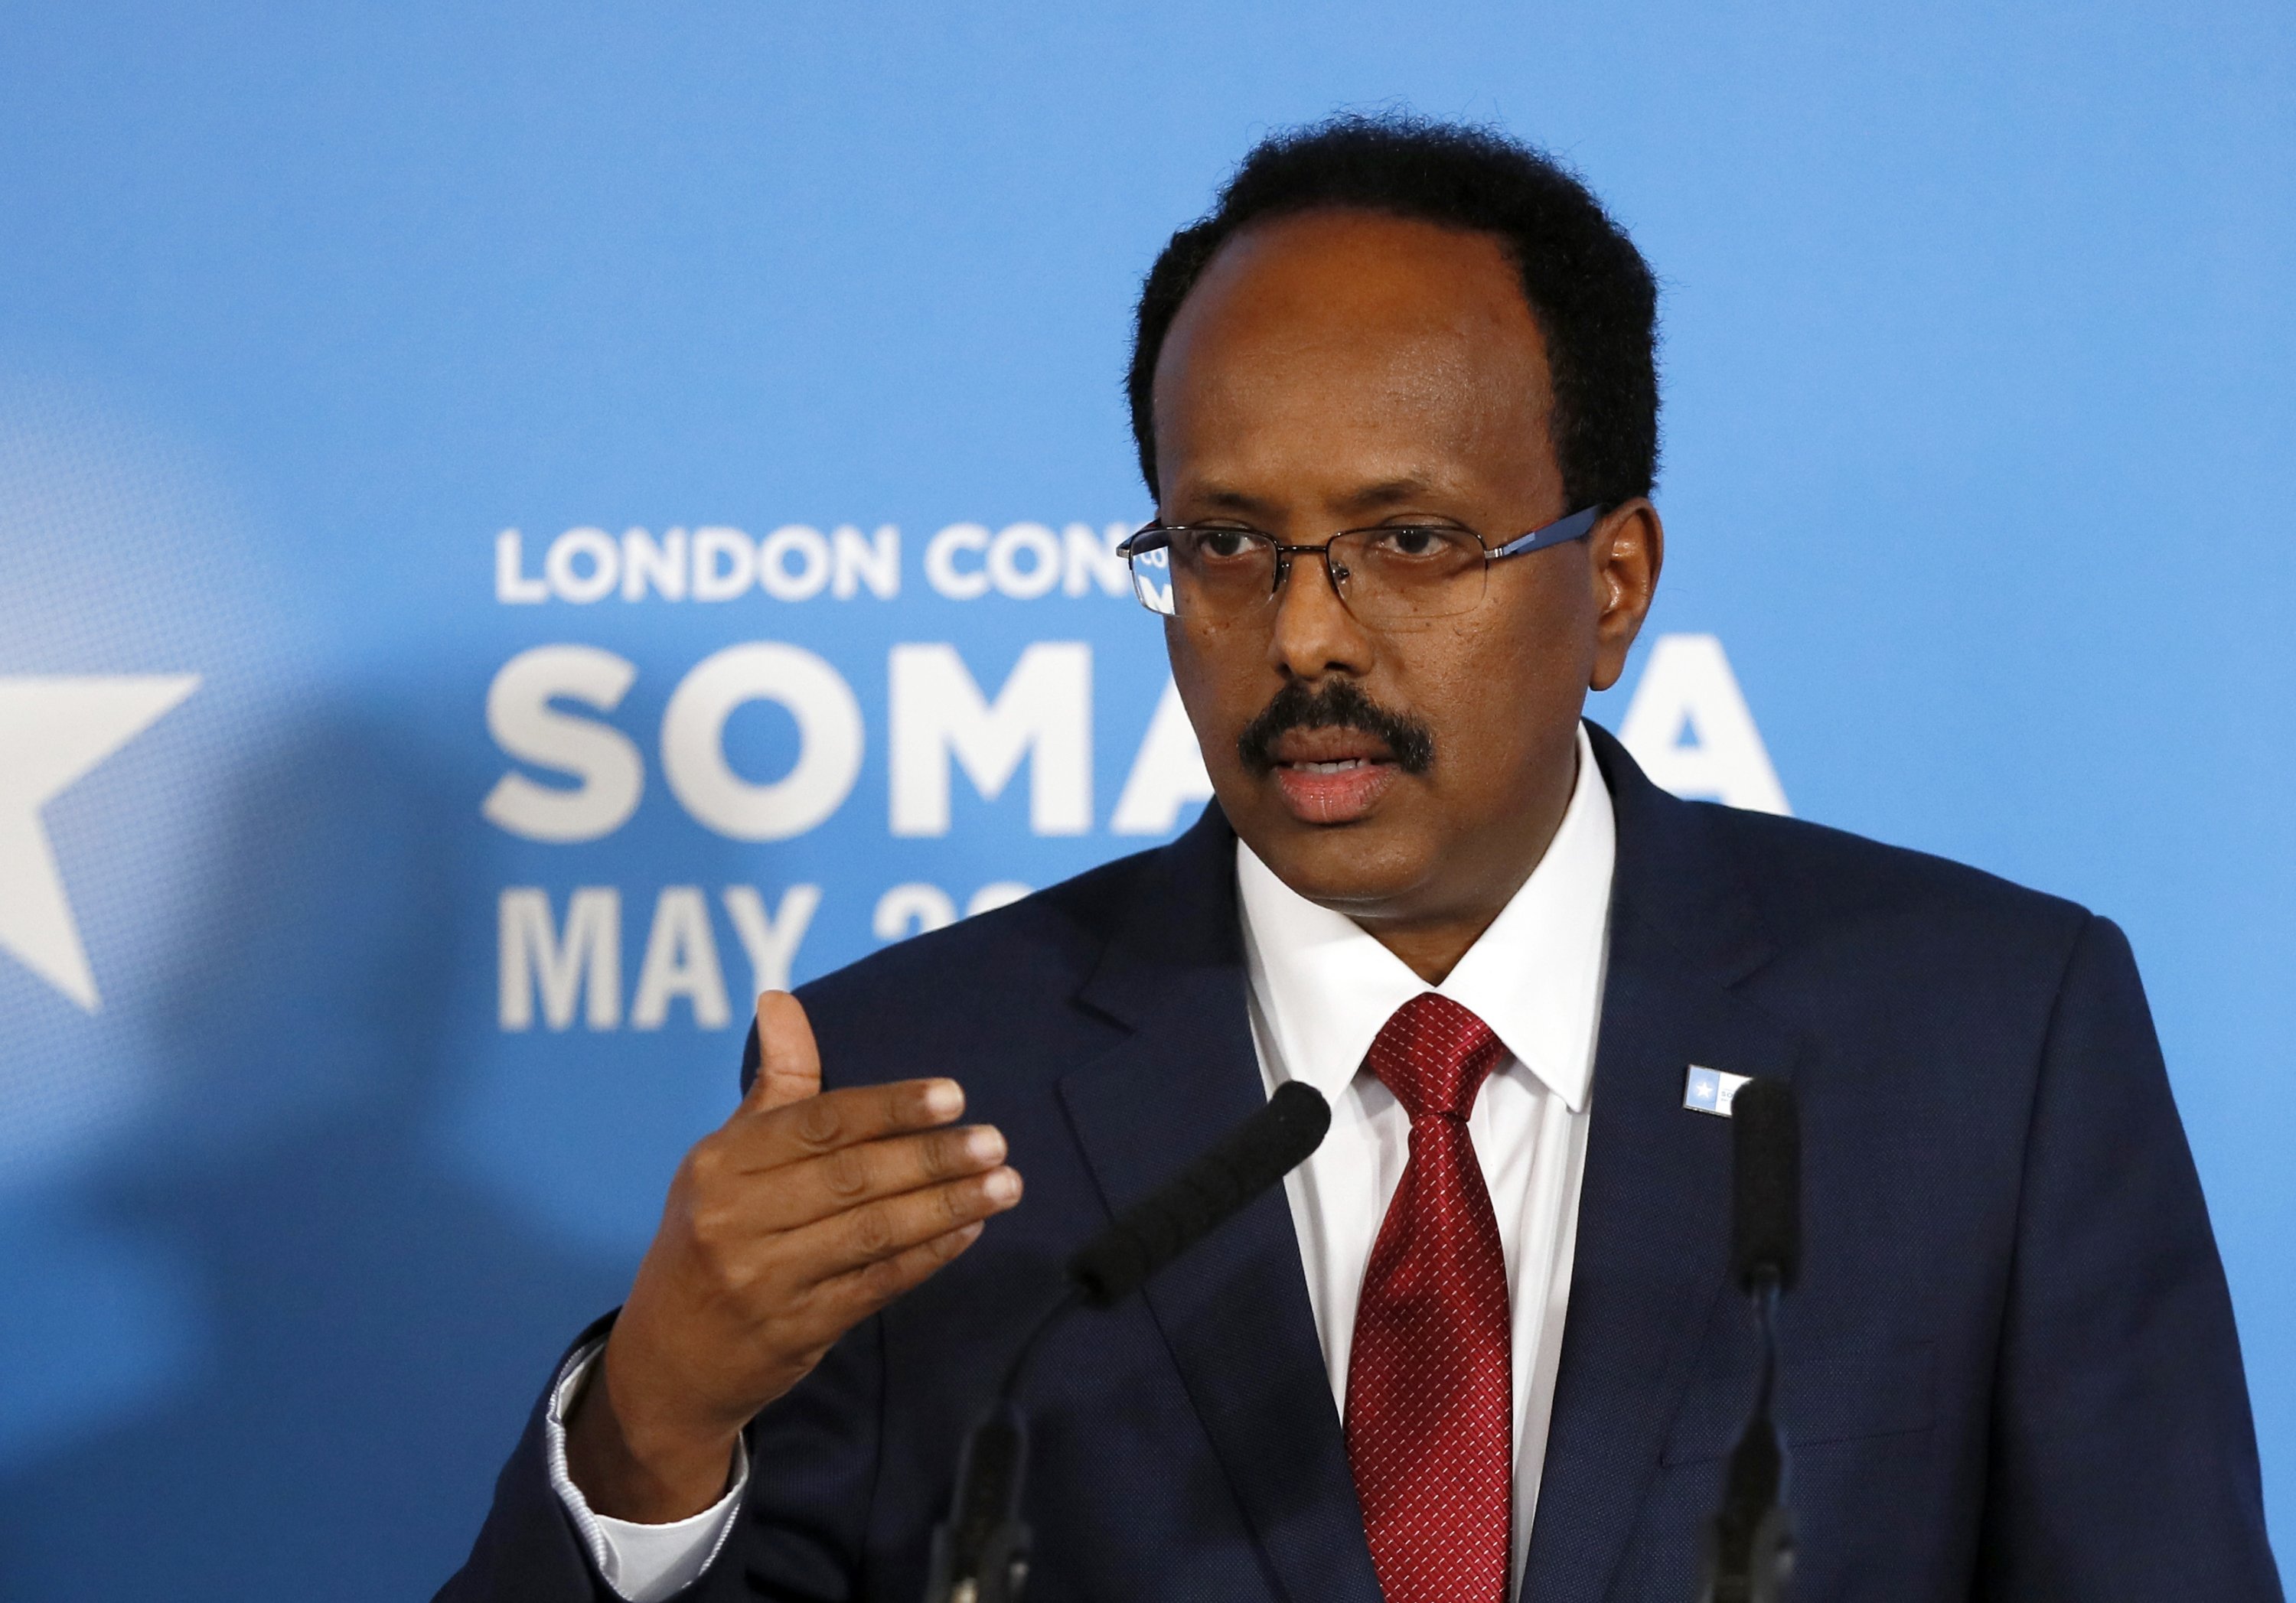 FARMAAJO's speech did not reflect the reality of Somalia